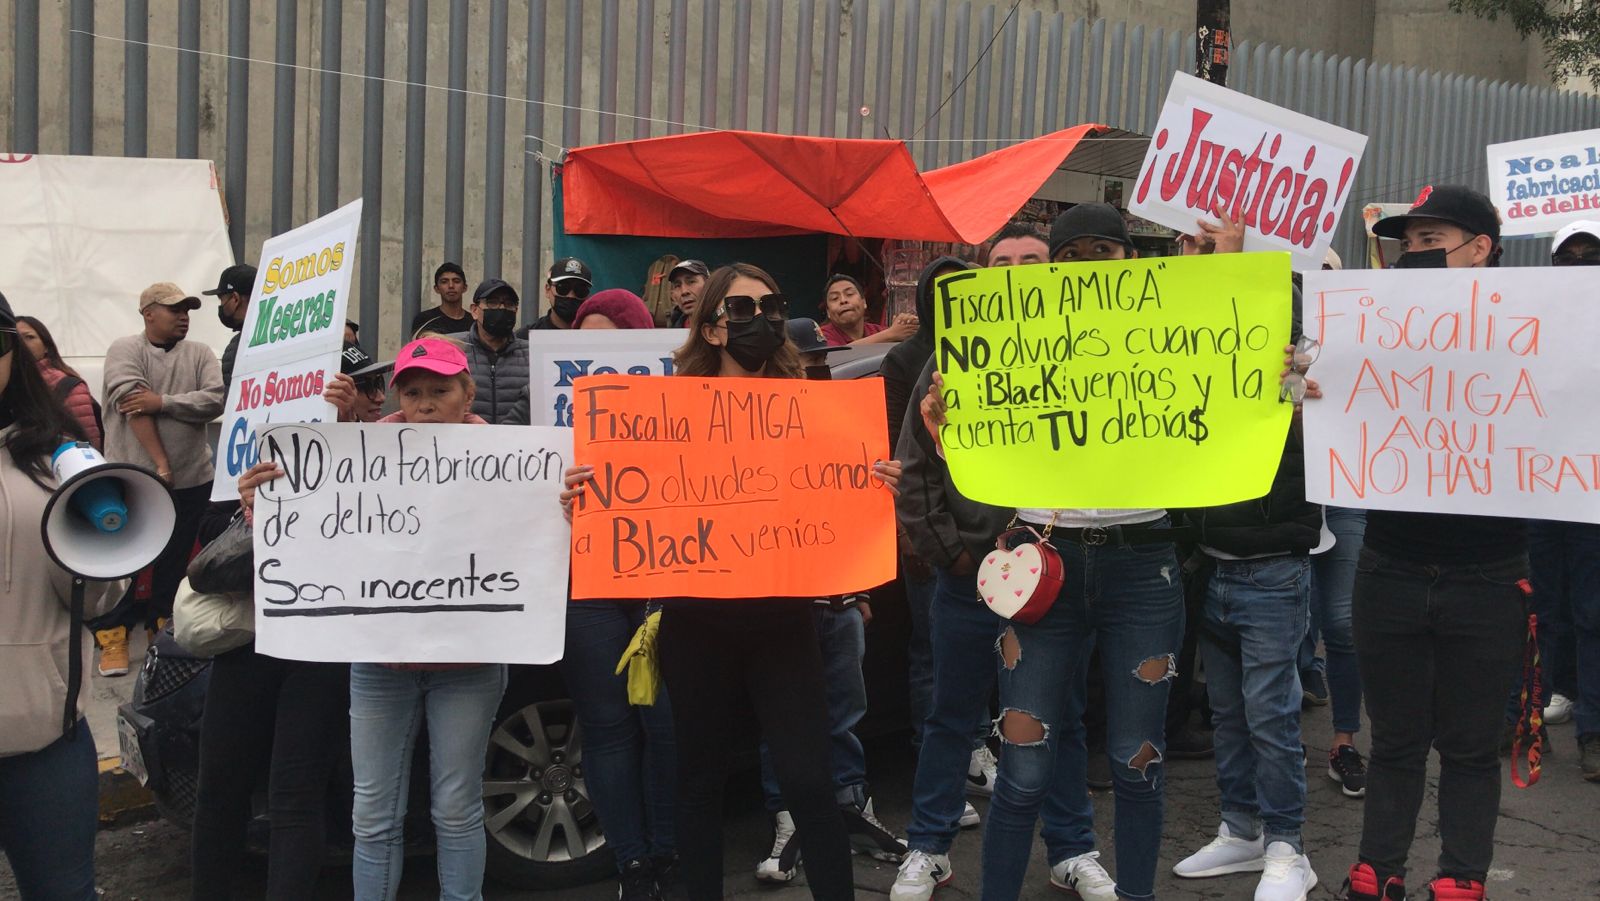 “Aquí no hay trata”: protestan en los juzgados de Barrientos por empleados del Black Royce ligados al caso Iñigo Arenas